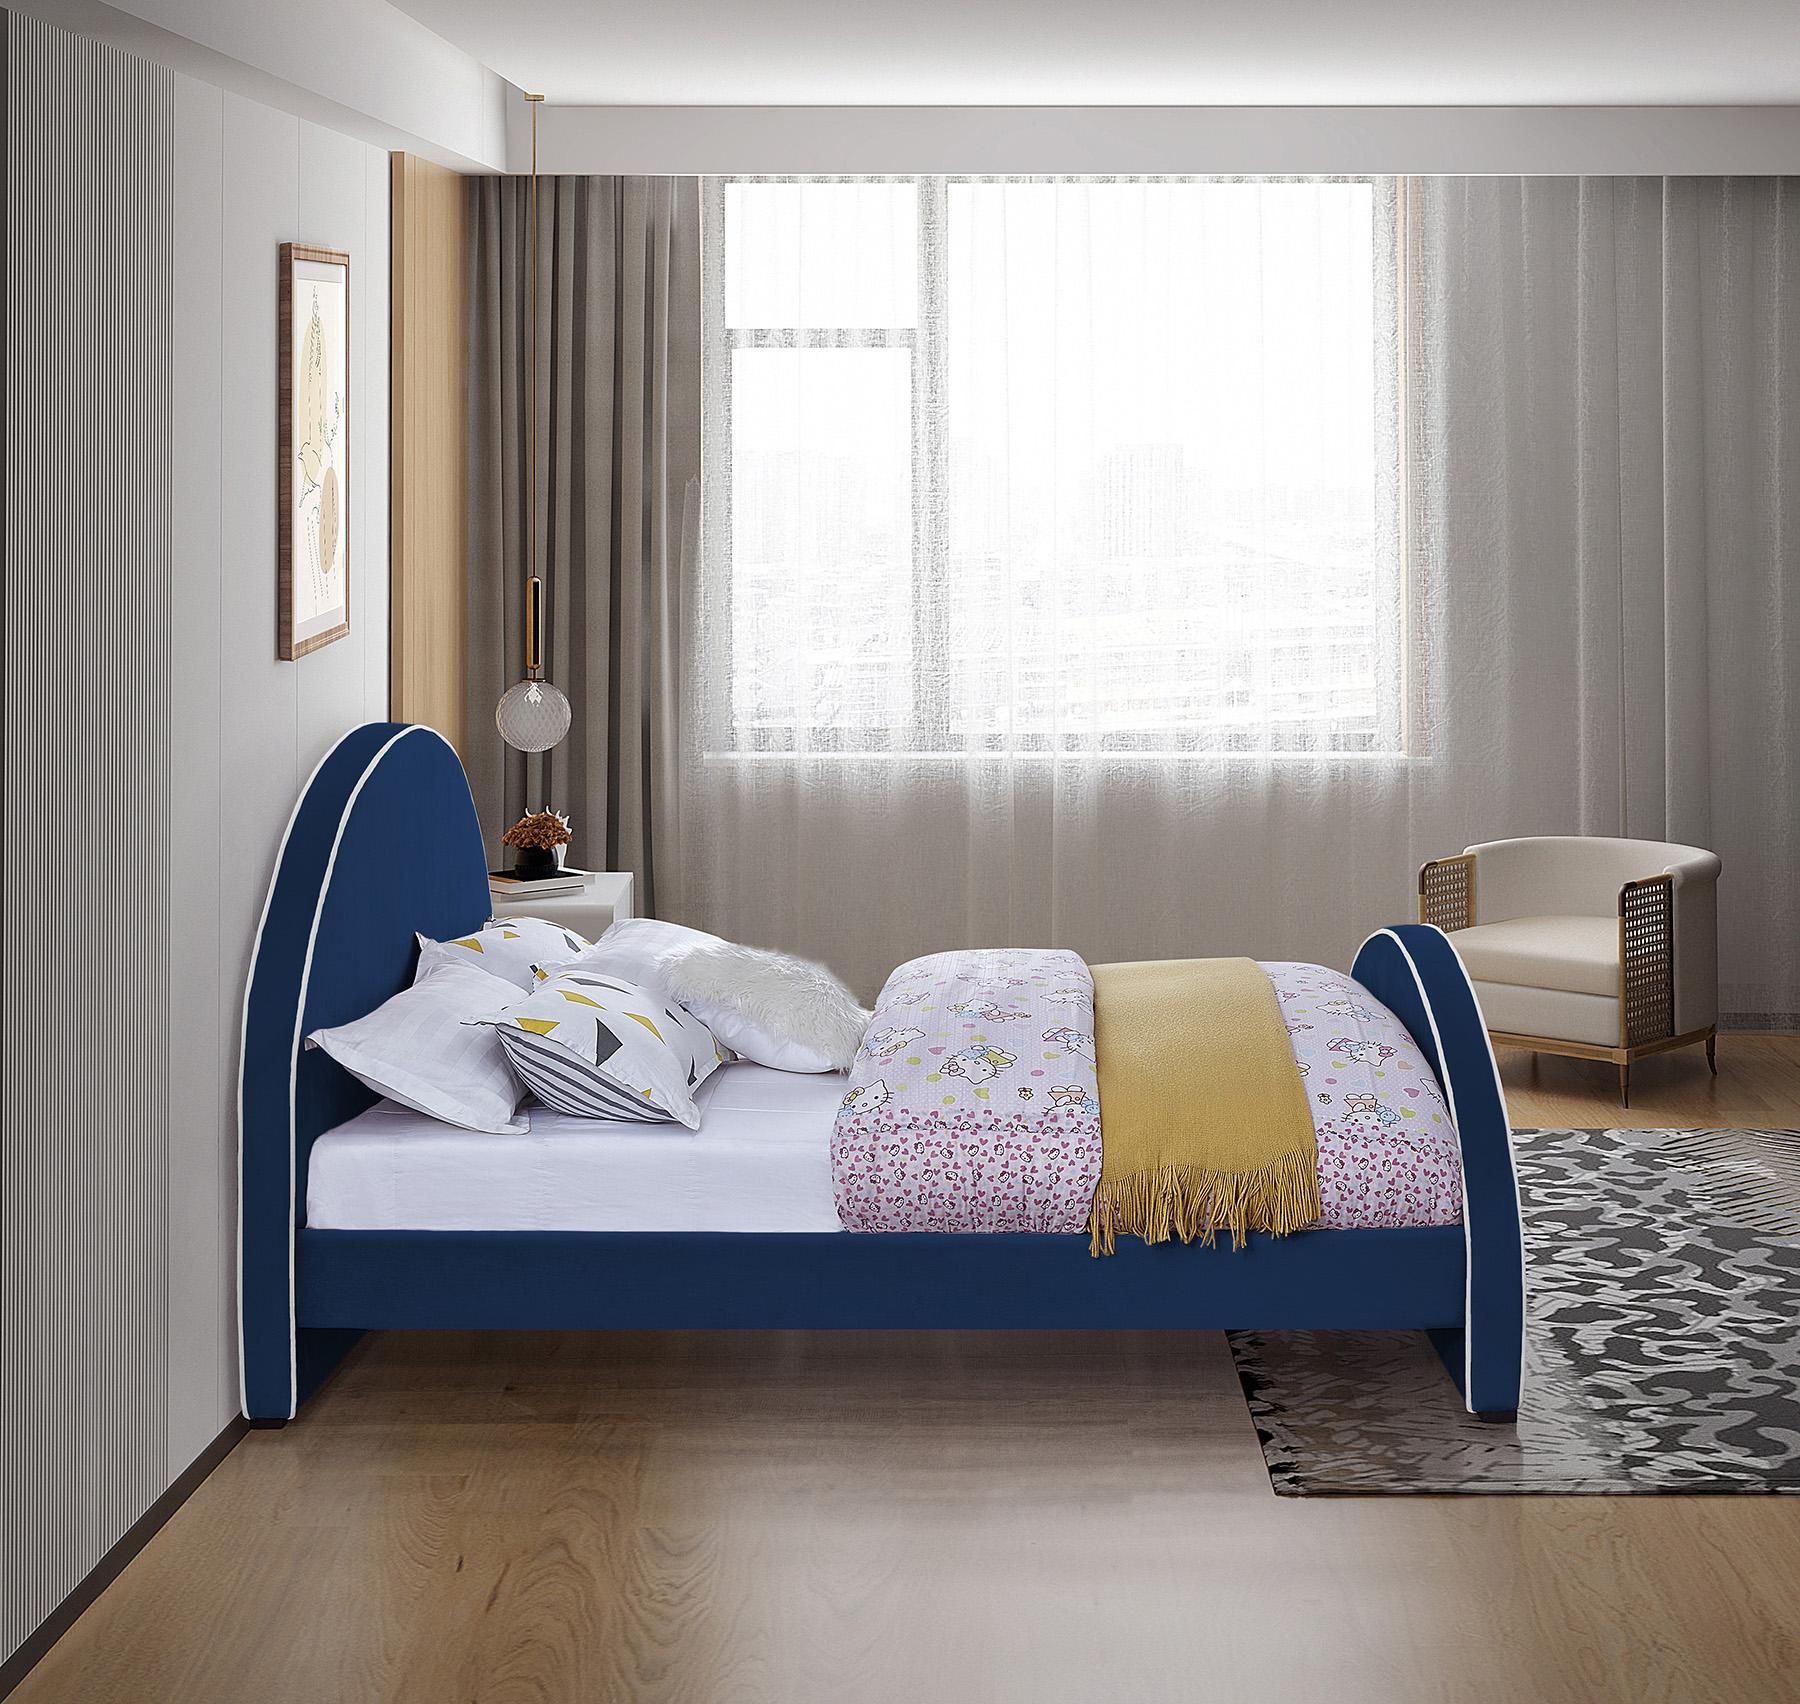 

    
BrodyNavy-Q Meridian Furniture Platform Bed
